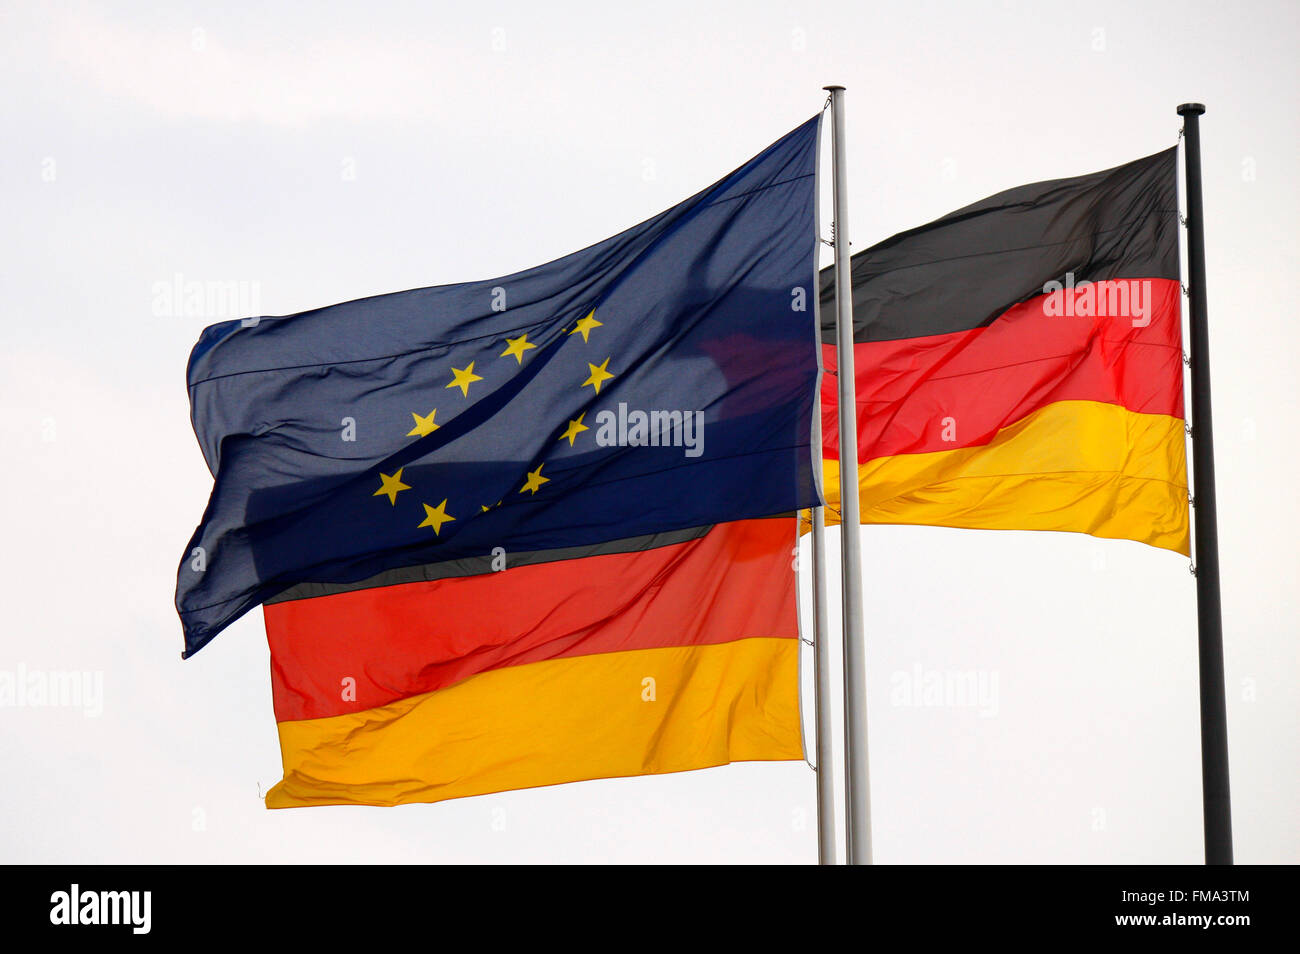 Europa und Deutschland-Fahnen - nach der Wahl zum neuen Bundespraesidenten Joachim Gaucks, Bundesversammlung, Reichstagsgebaeud Foto de stock